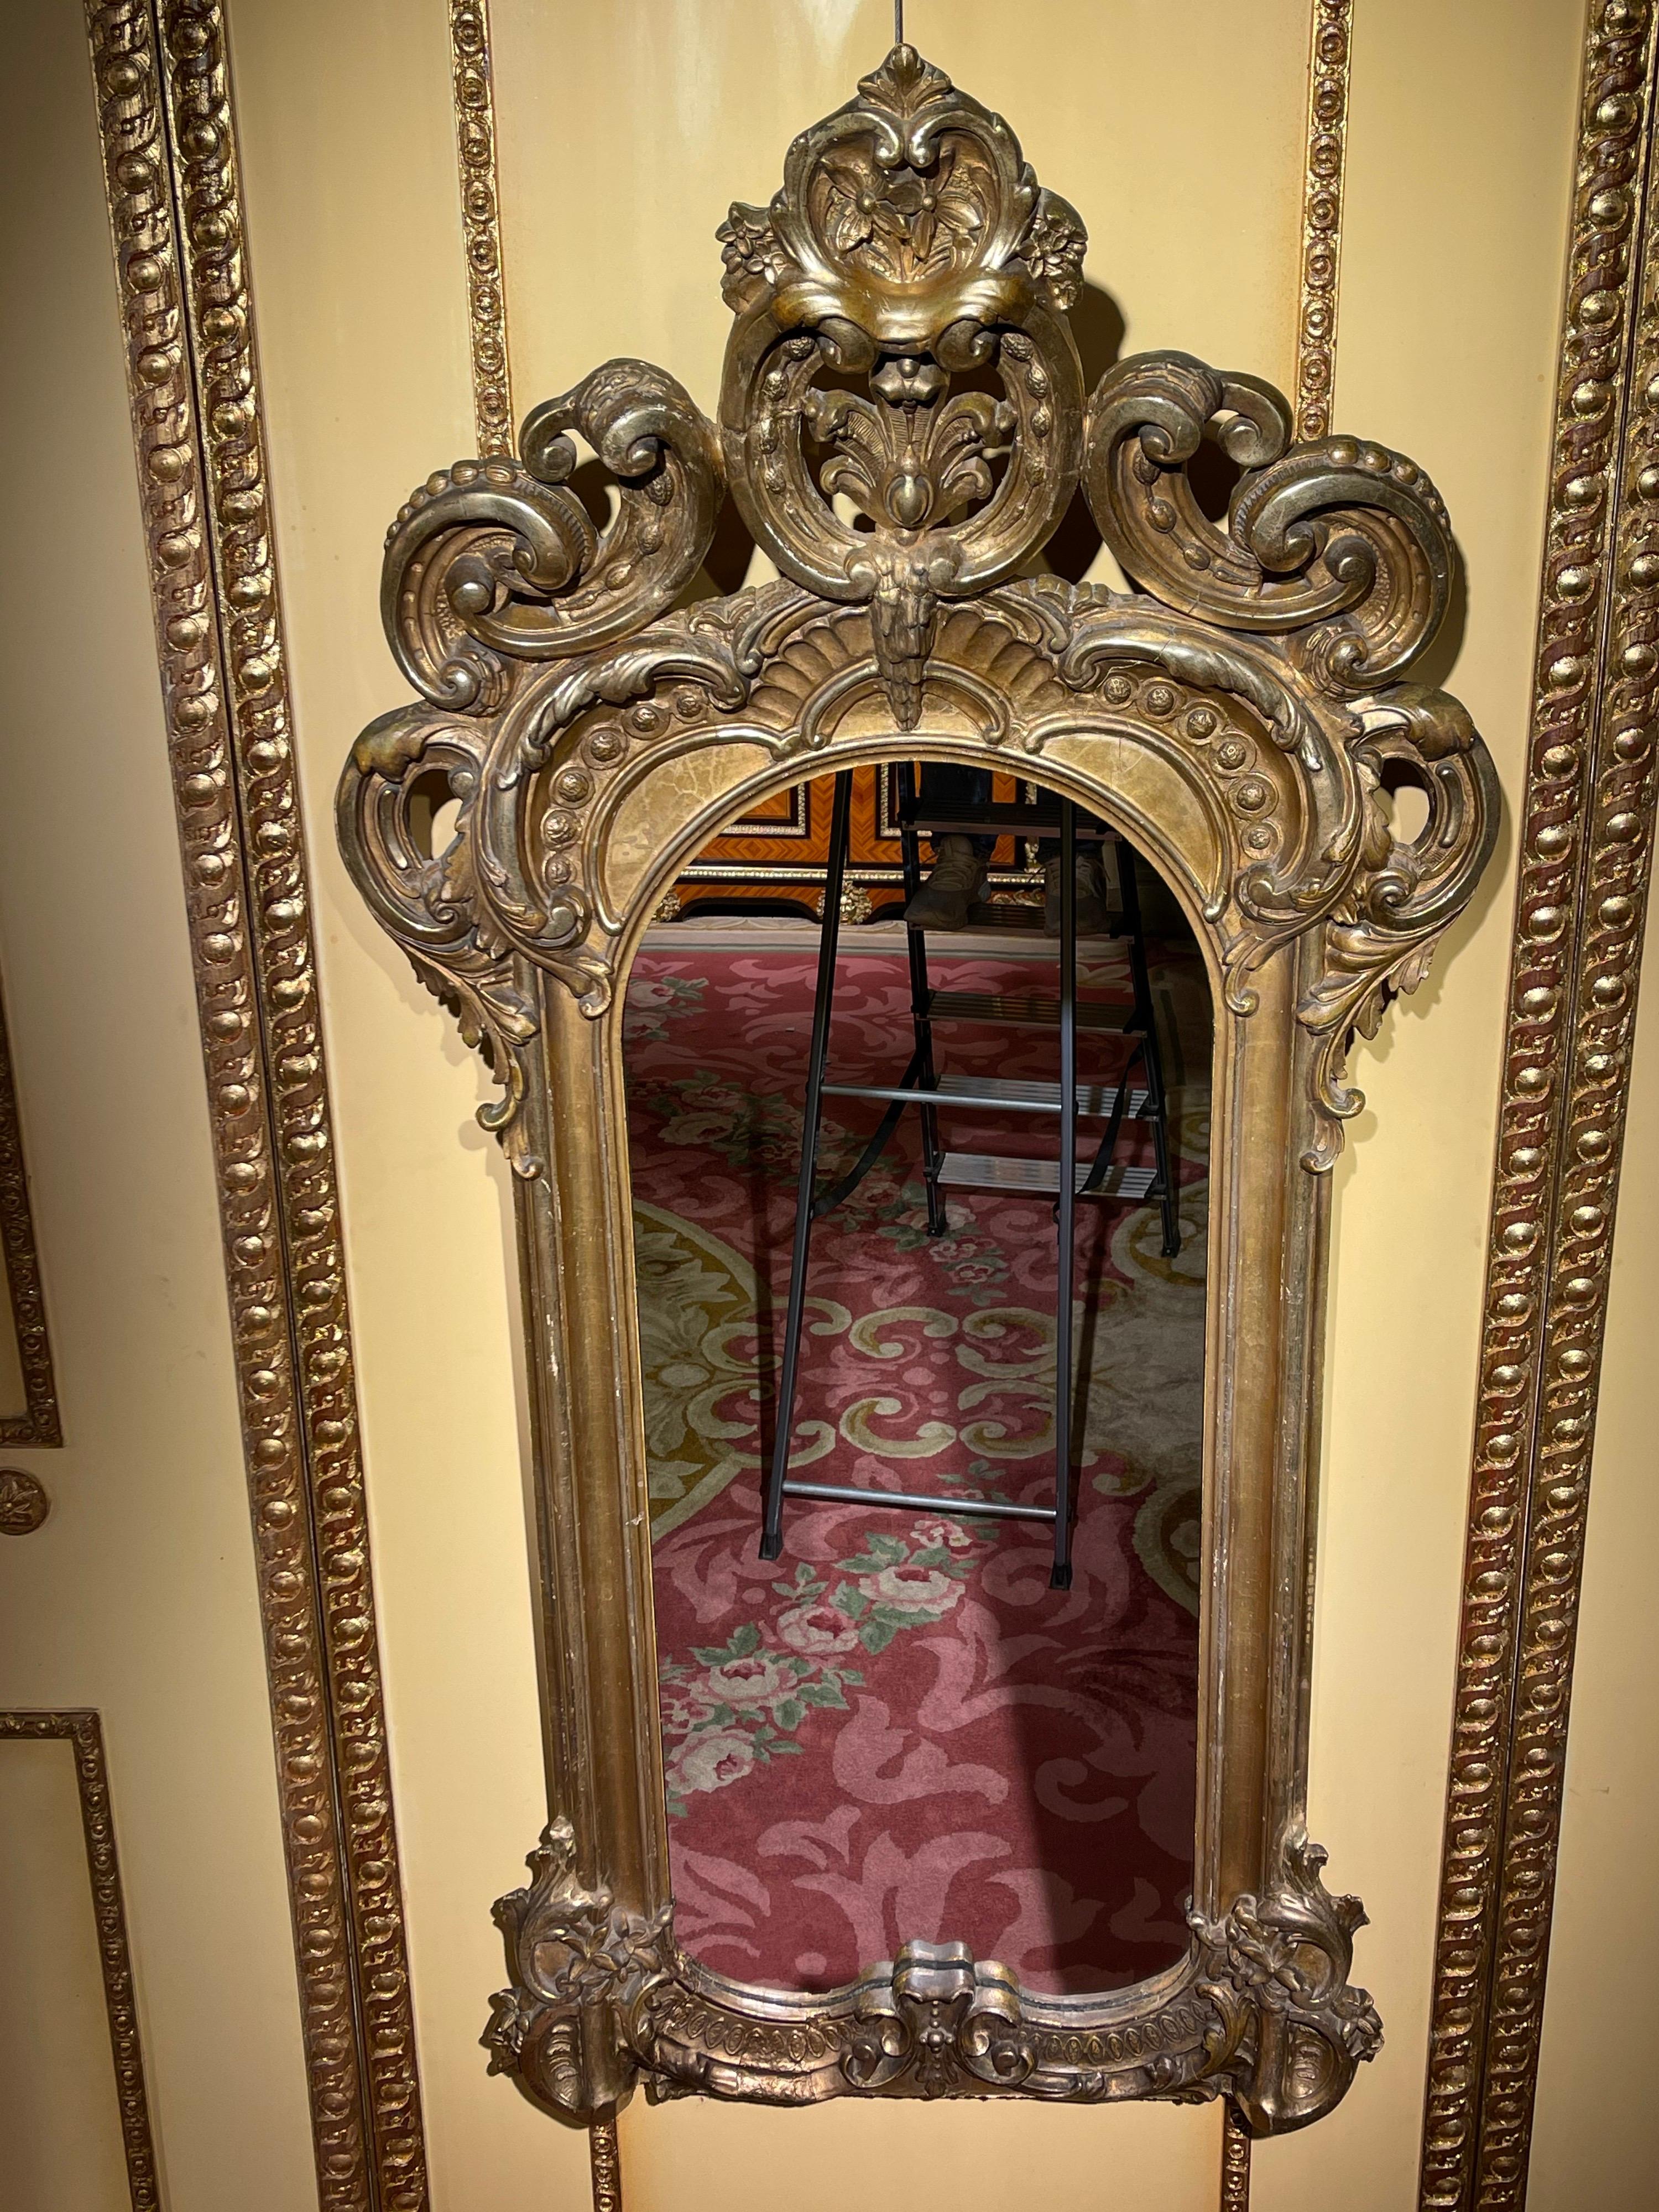 Miroir mural de salon doré et majestueux, Napoléon III

Miroir mural magnifique et richement orné. Avec une couronne haute et prononcée. Extrêmement finement travaillée et plaquée or.

France vers 1880.

Cadre de miroir très rectangulaire et